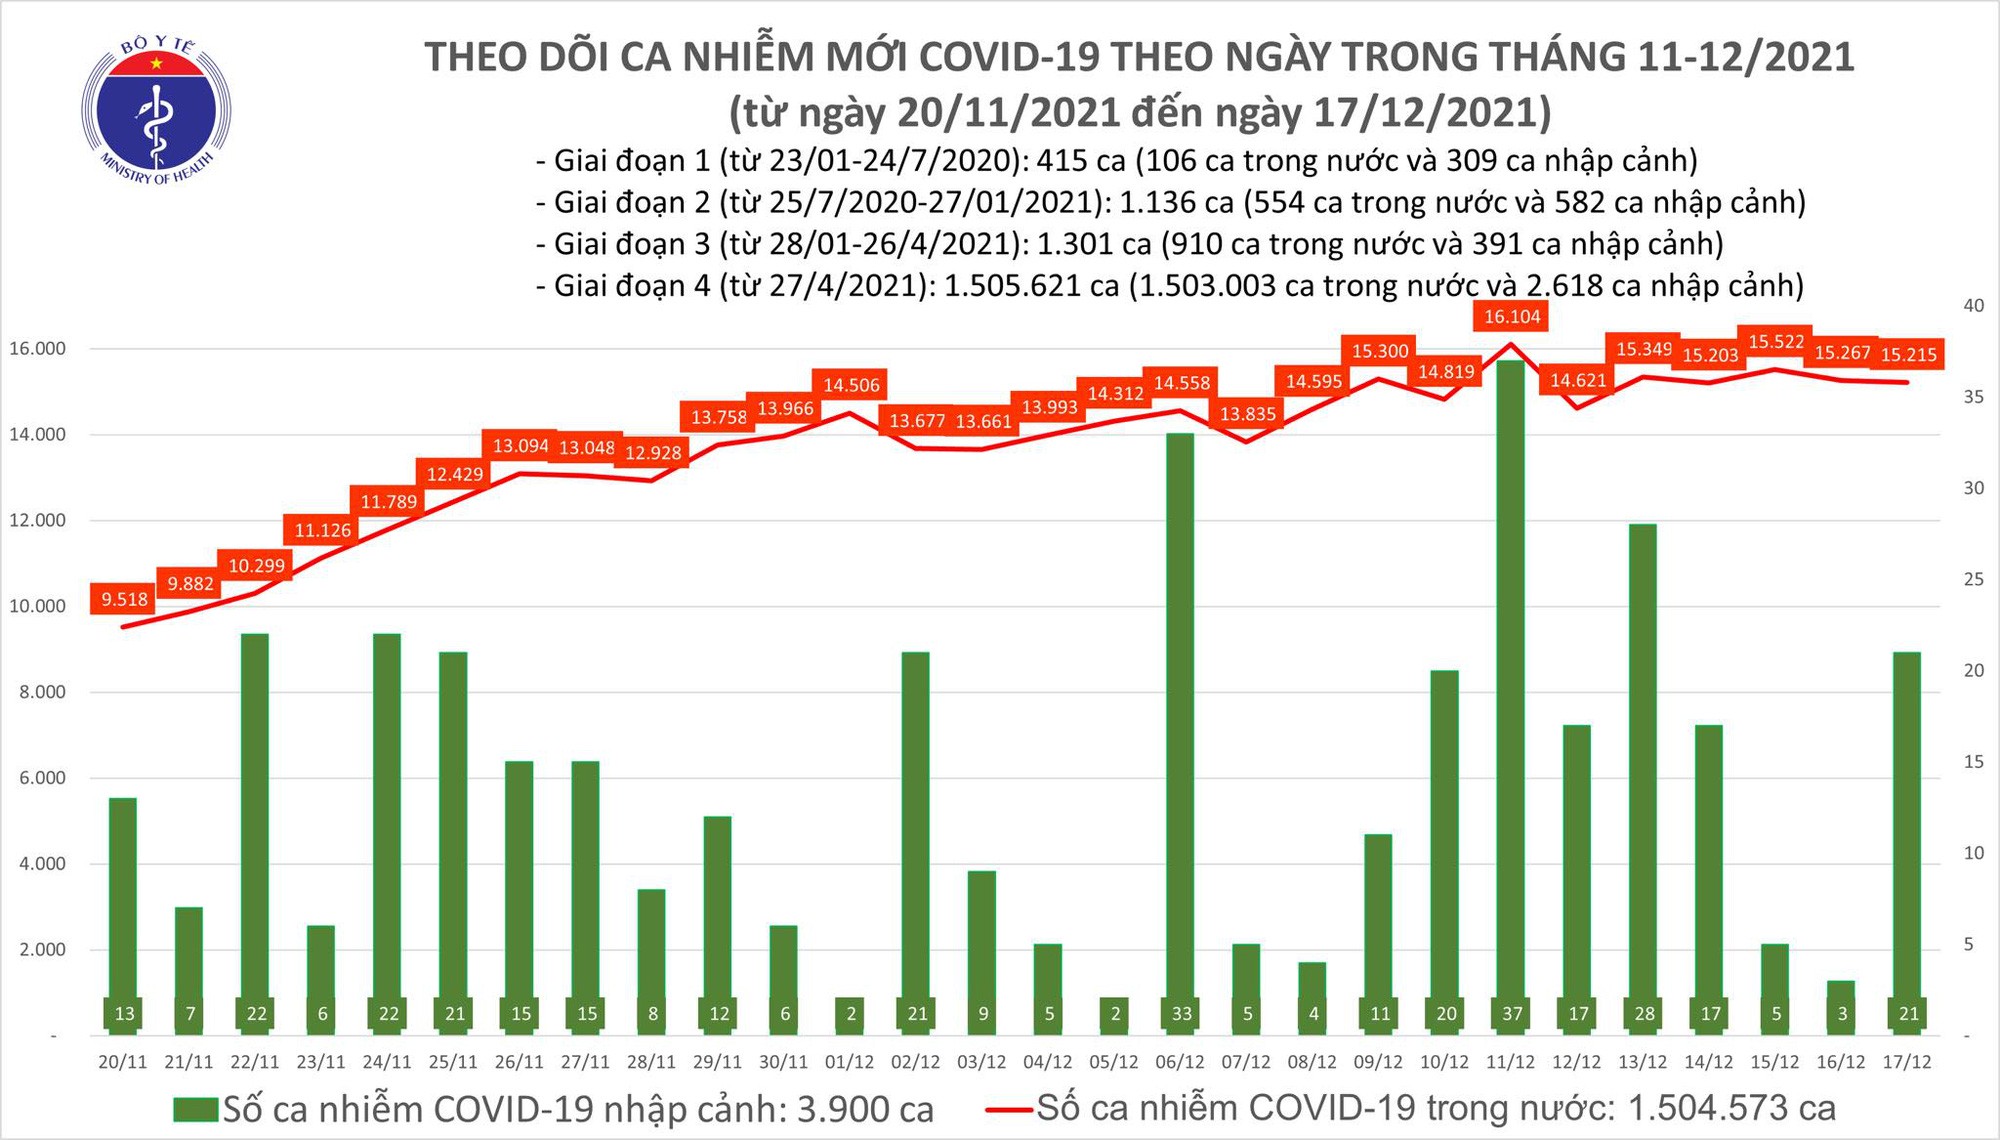 Ngày 17/12: Có 15.236 ca mắc COVID-19, số bệnh nhân khỏi kỷ lục với hơn 31.000 ca